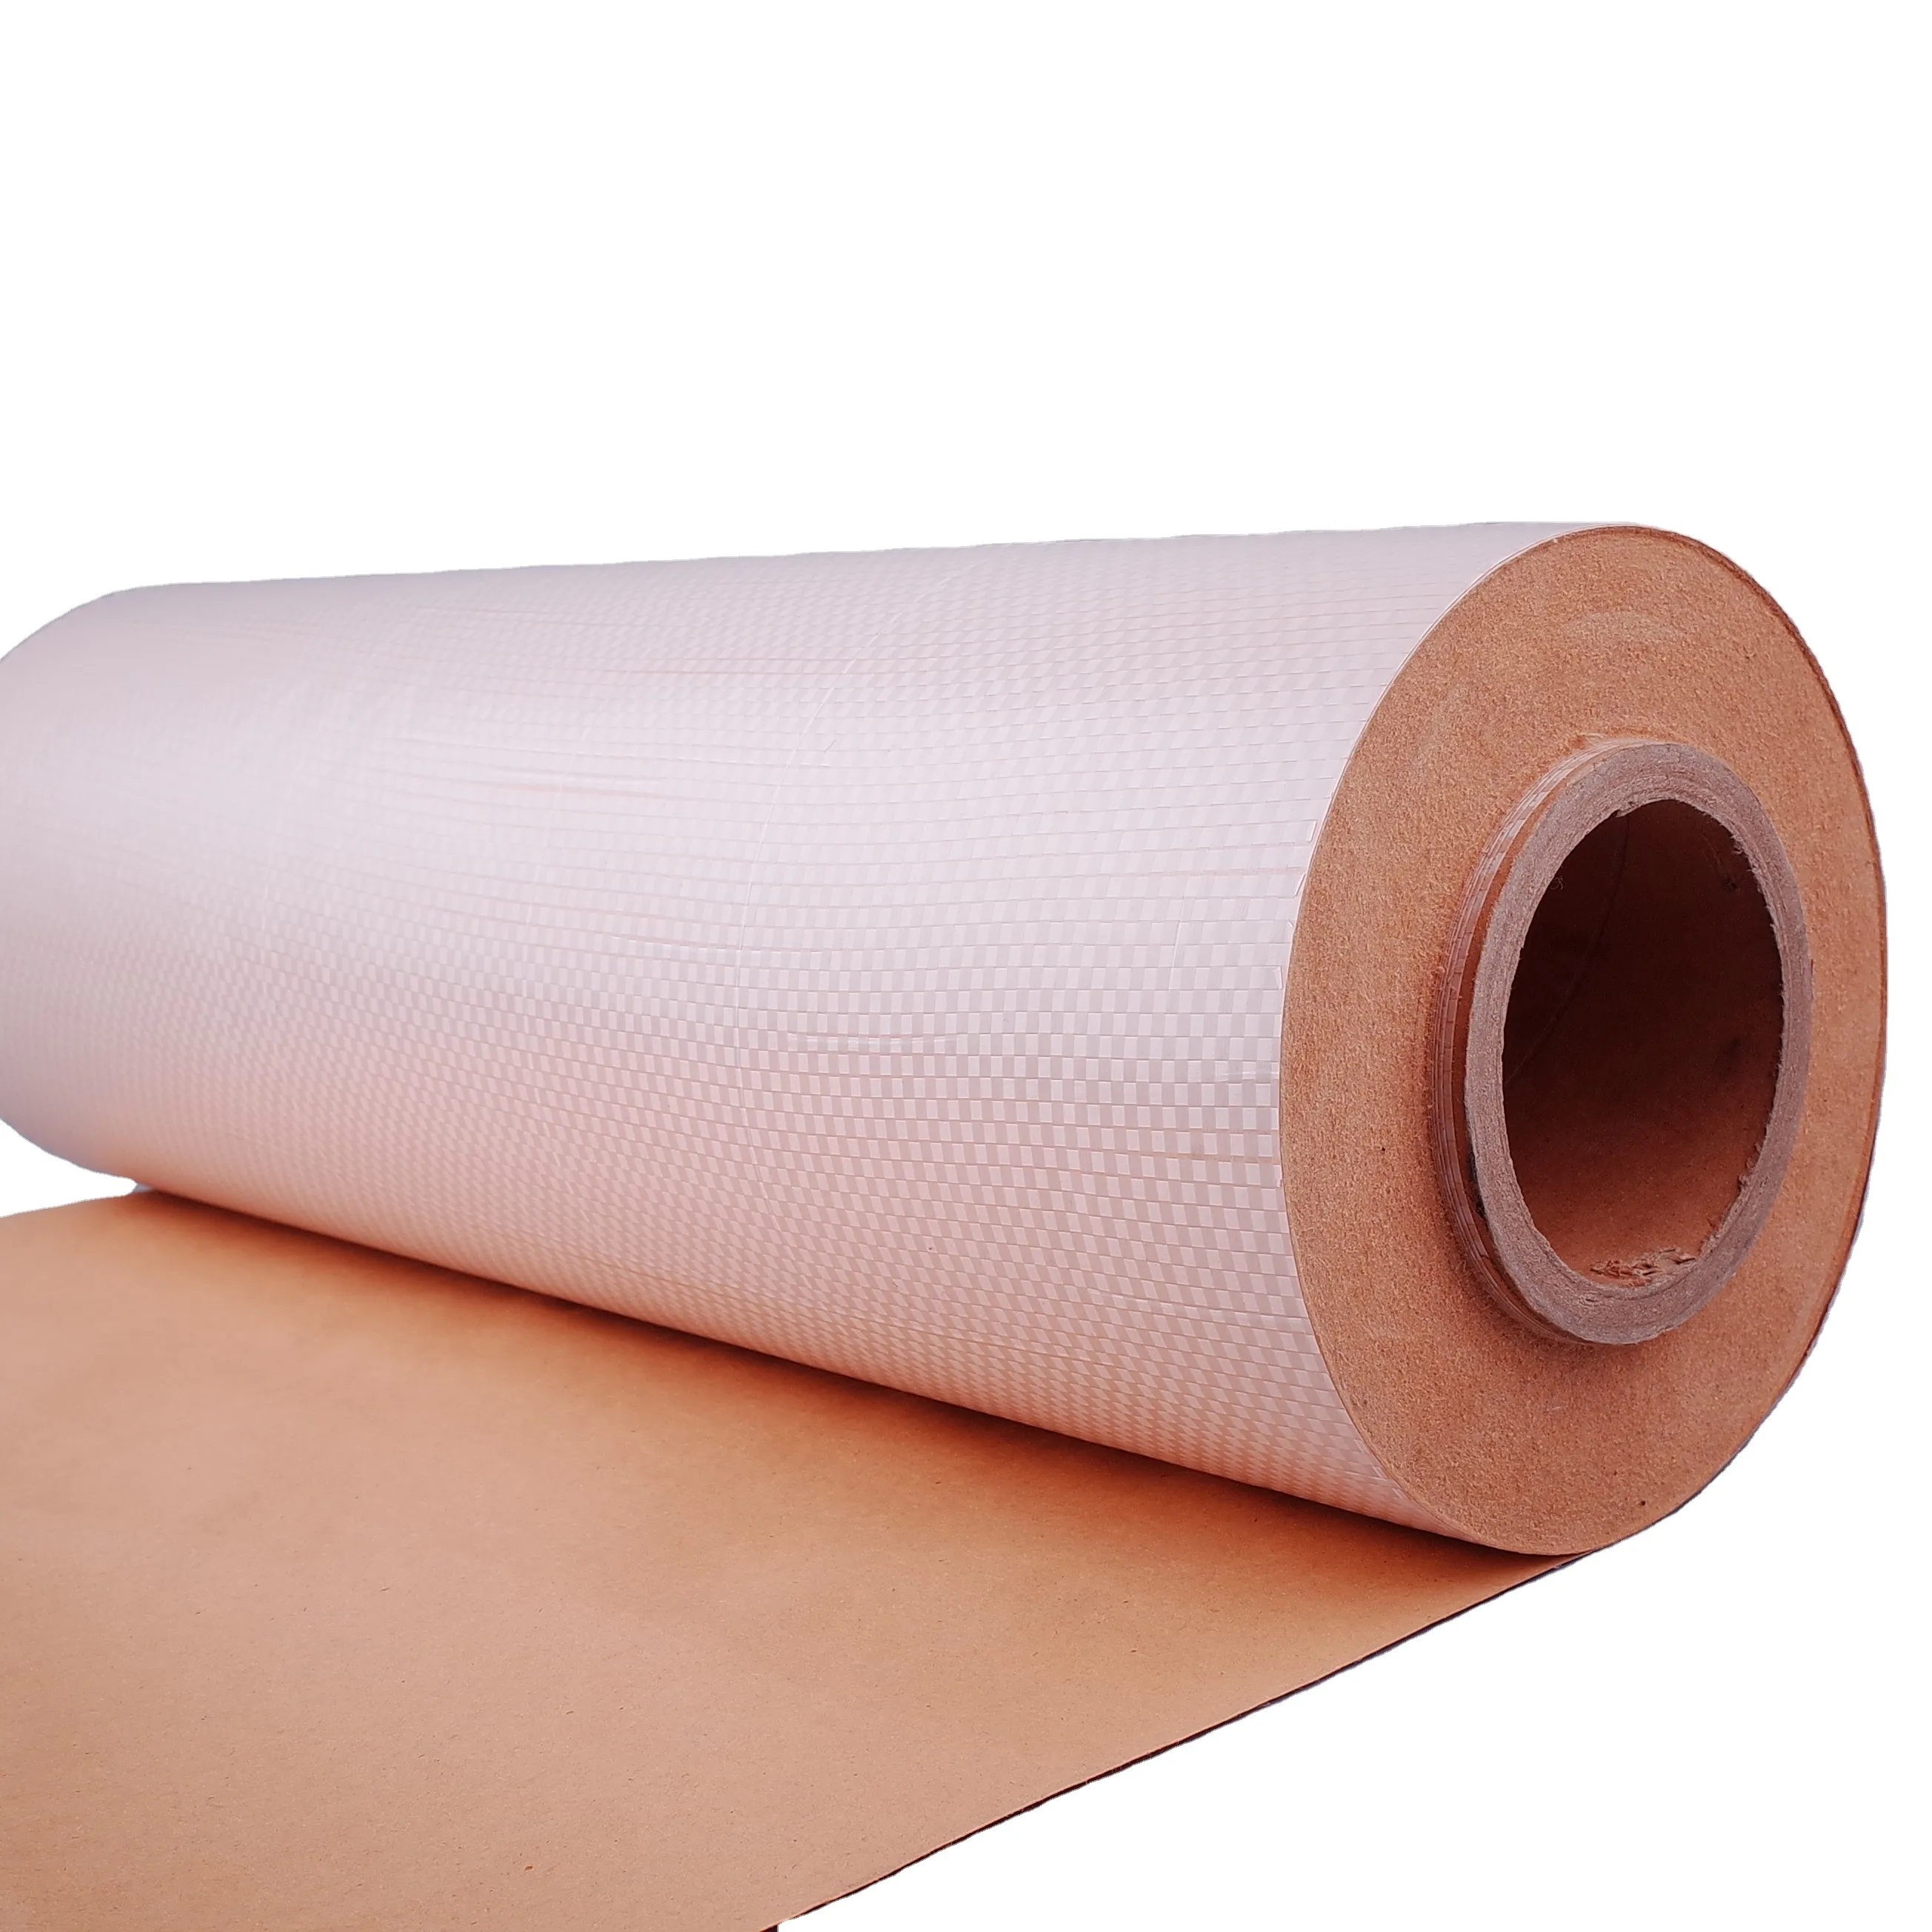 Vải dệt nhiều lớp lót bằng giấy kraft cho vật liệu đệm bảo vệ